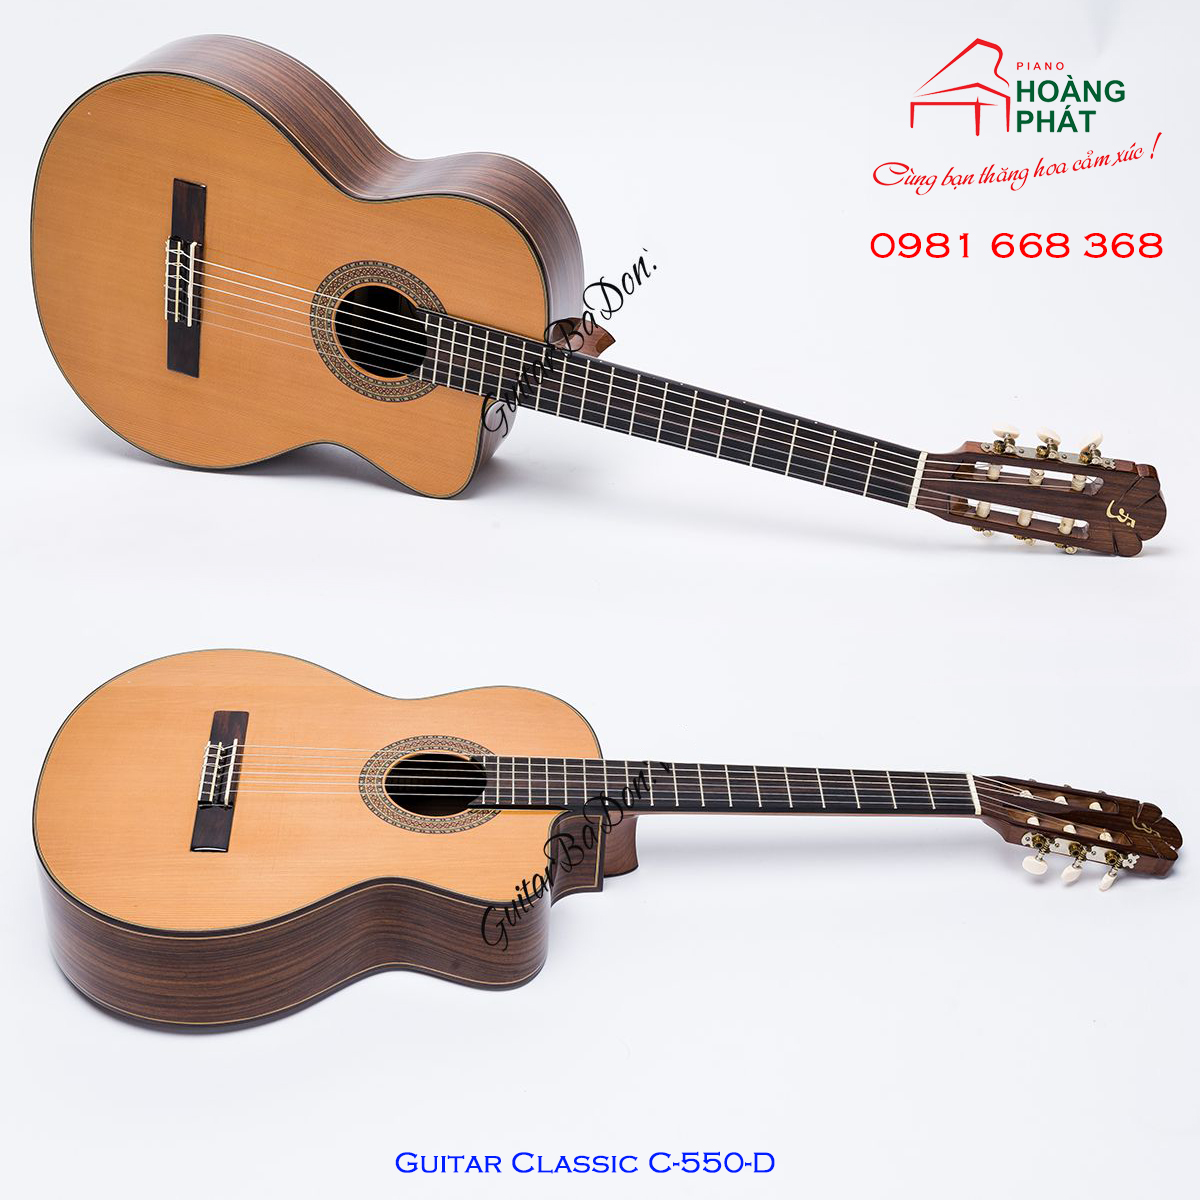 Guitar Classic C-550-D